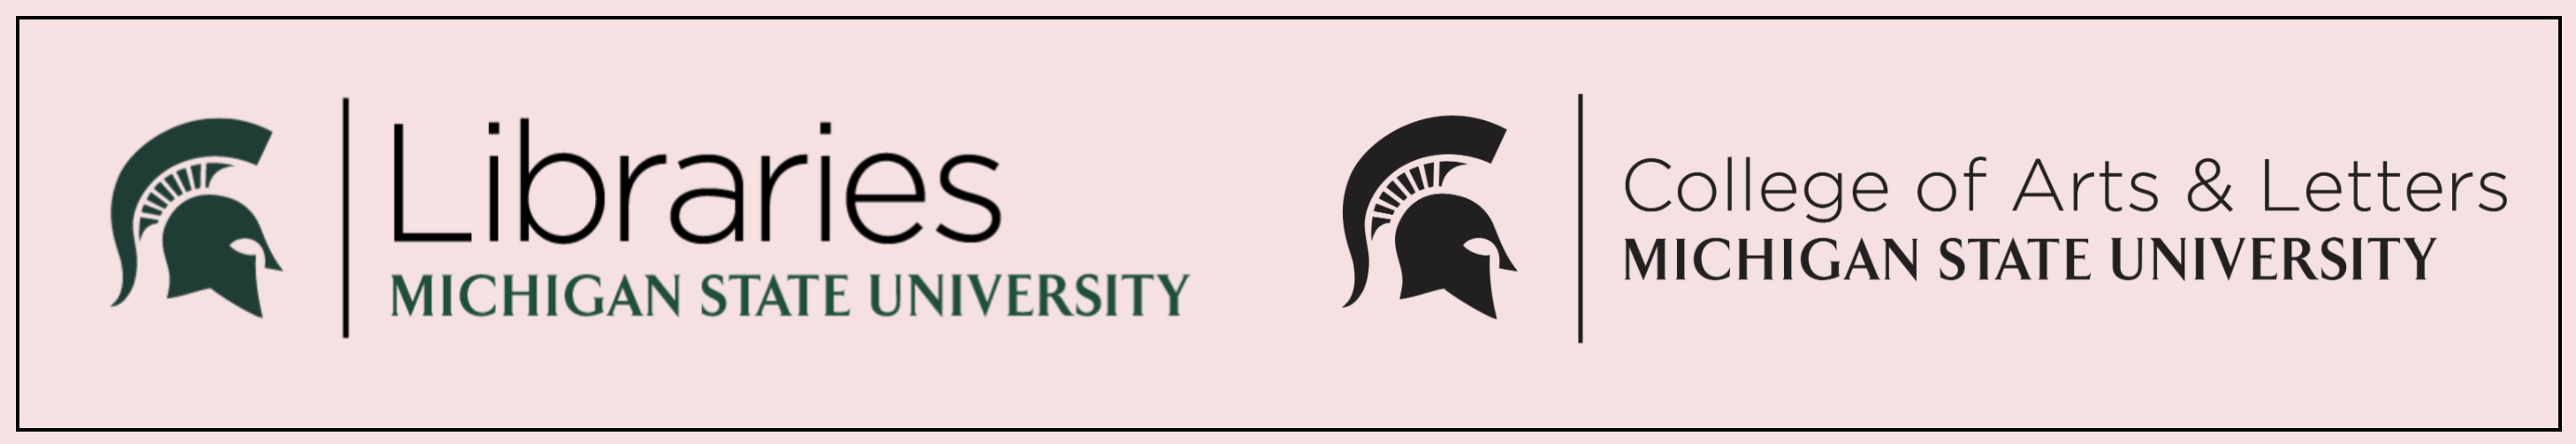 Michigan State University Libraries Logo and Michigan State University College of Arts and Letters logos